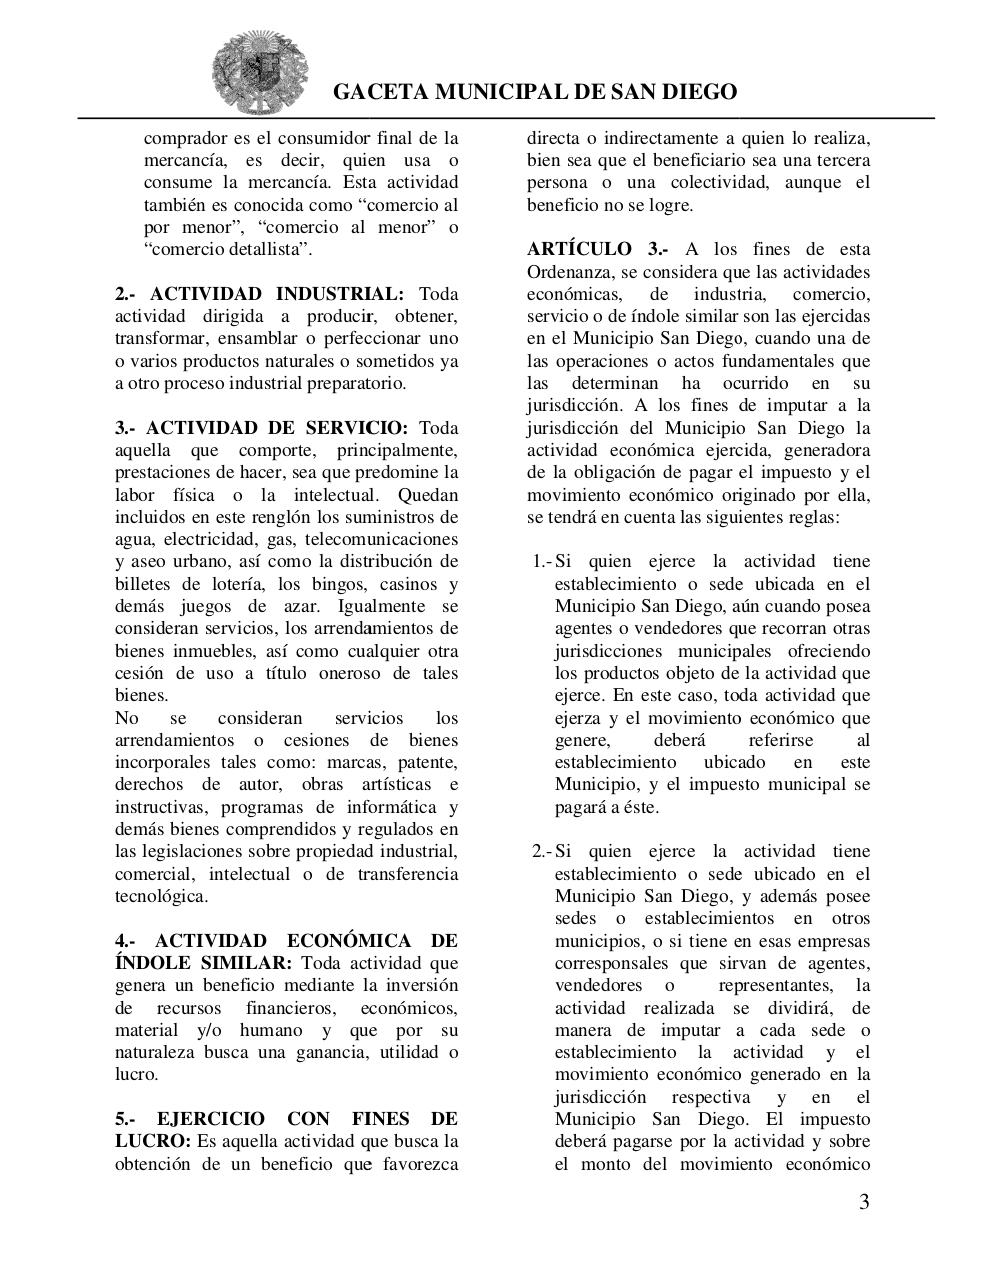 Vista previa del archivo PDF ord-sobre-act-economicas-de-industria-comercio-servicio-o-de-ndole-similar.pdf